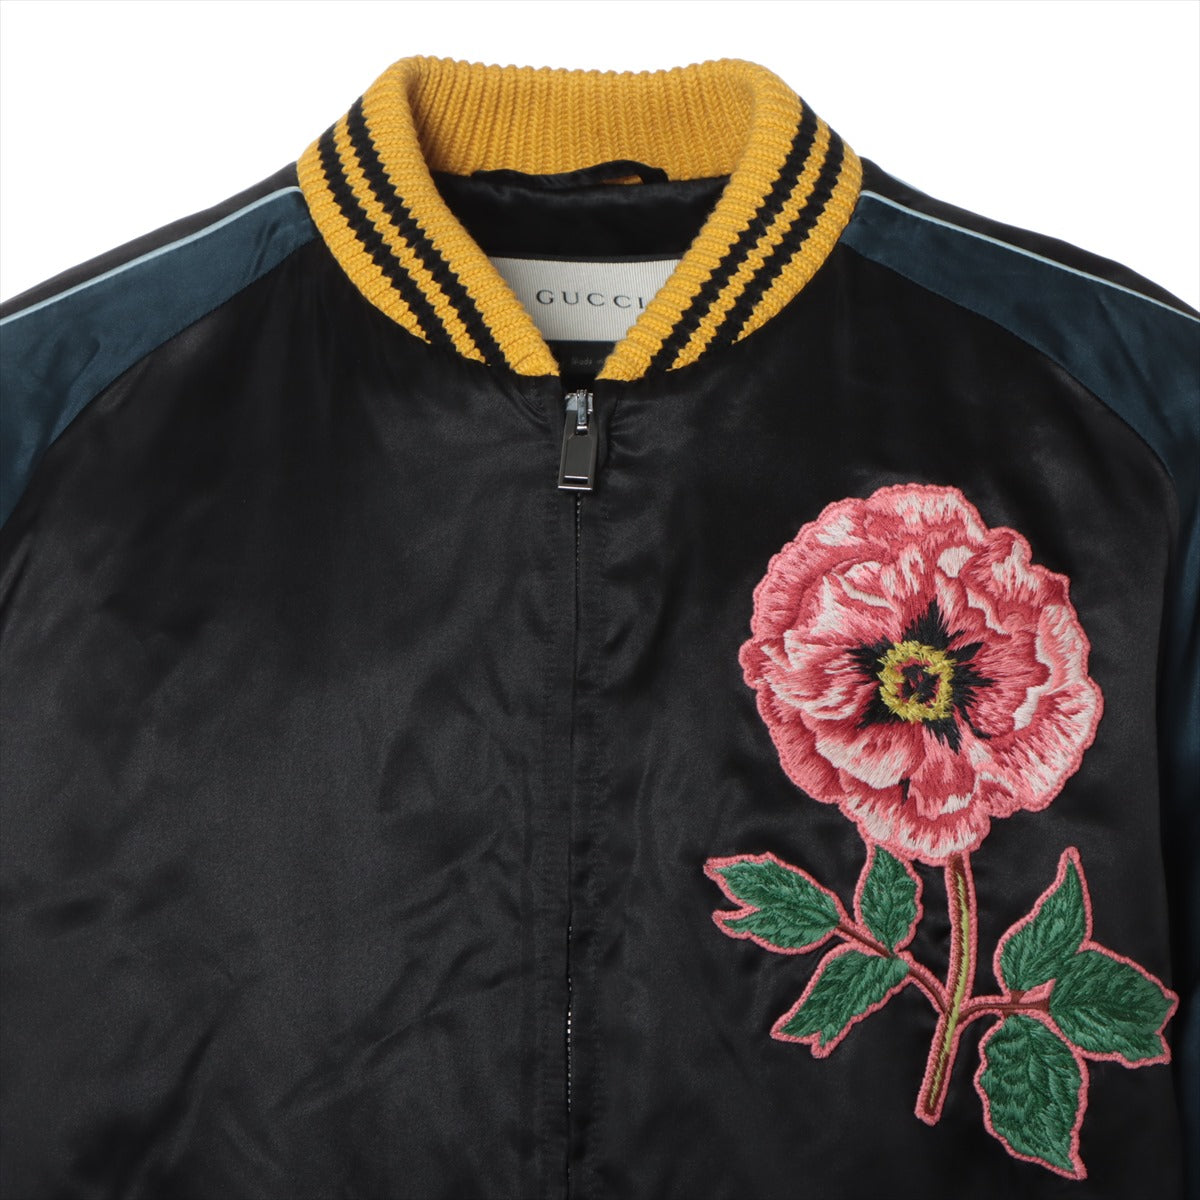 グッチ レーヨン×シルク スタジャン 52 メンズ ブラック×ネイビー  429485 2016 Embroidery Souvenir Jacket 刺繍スーベニア